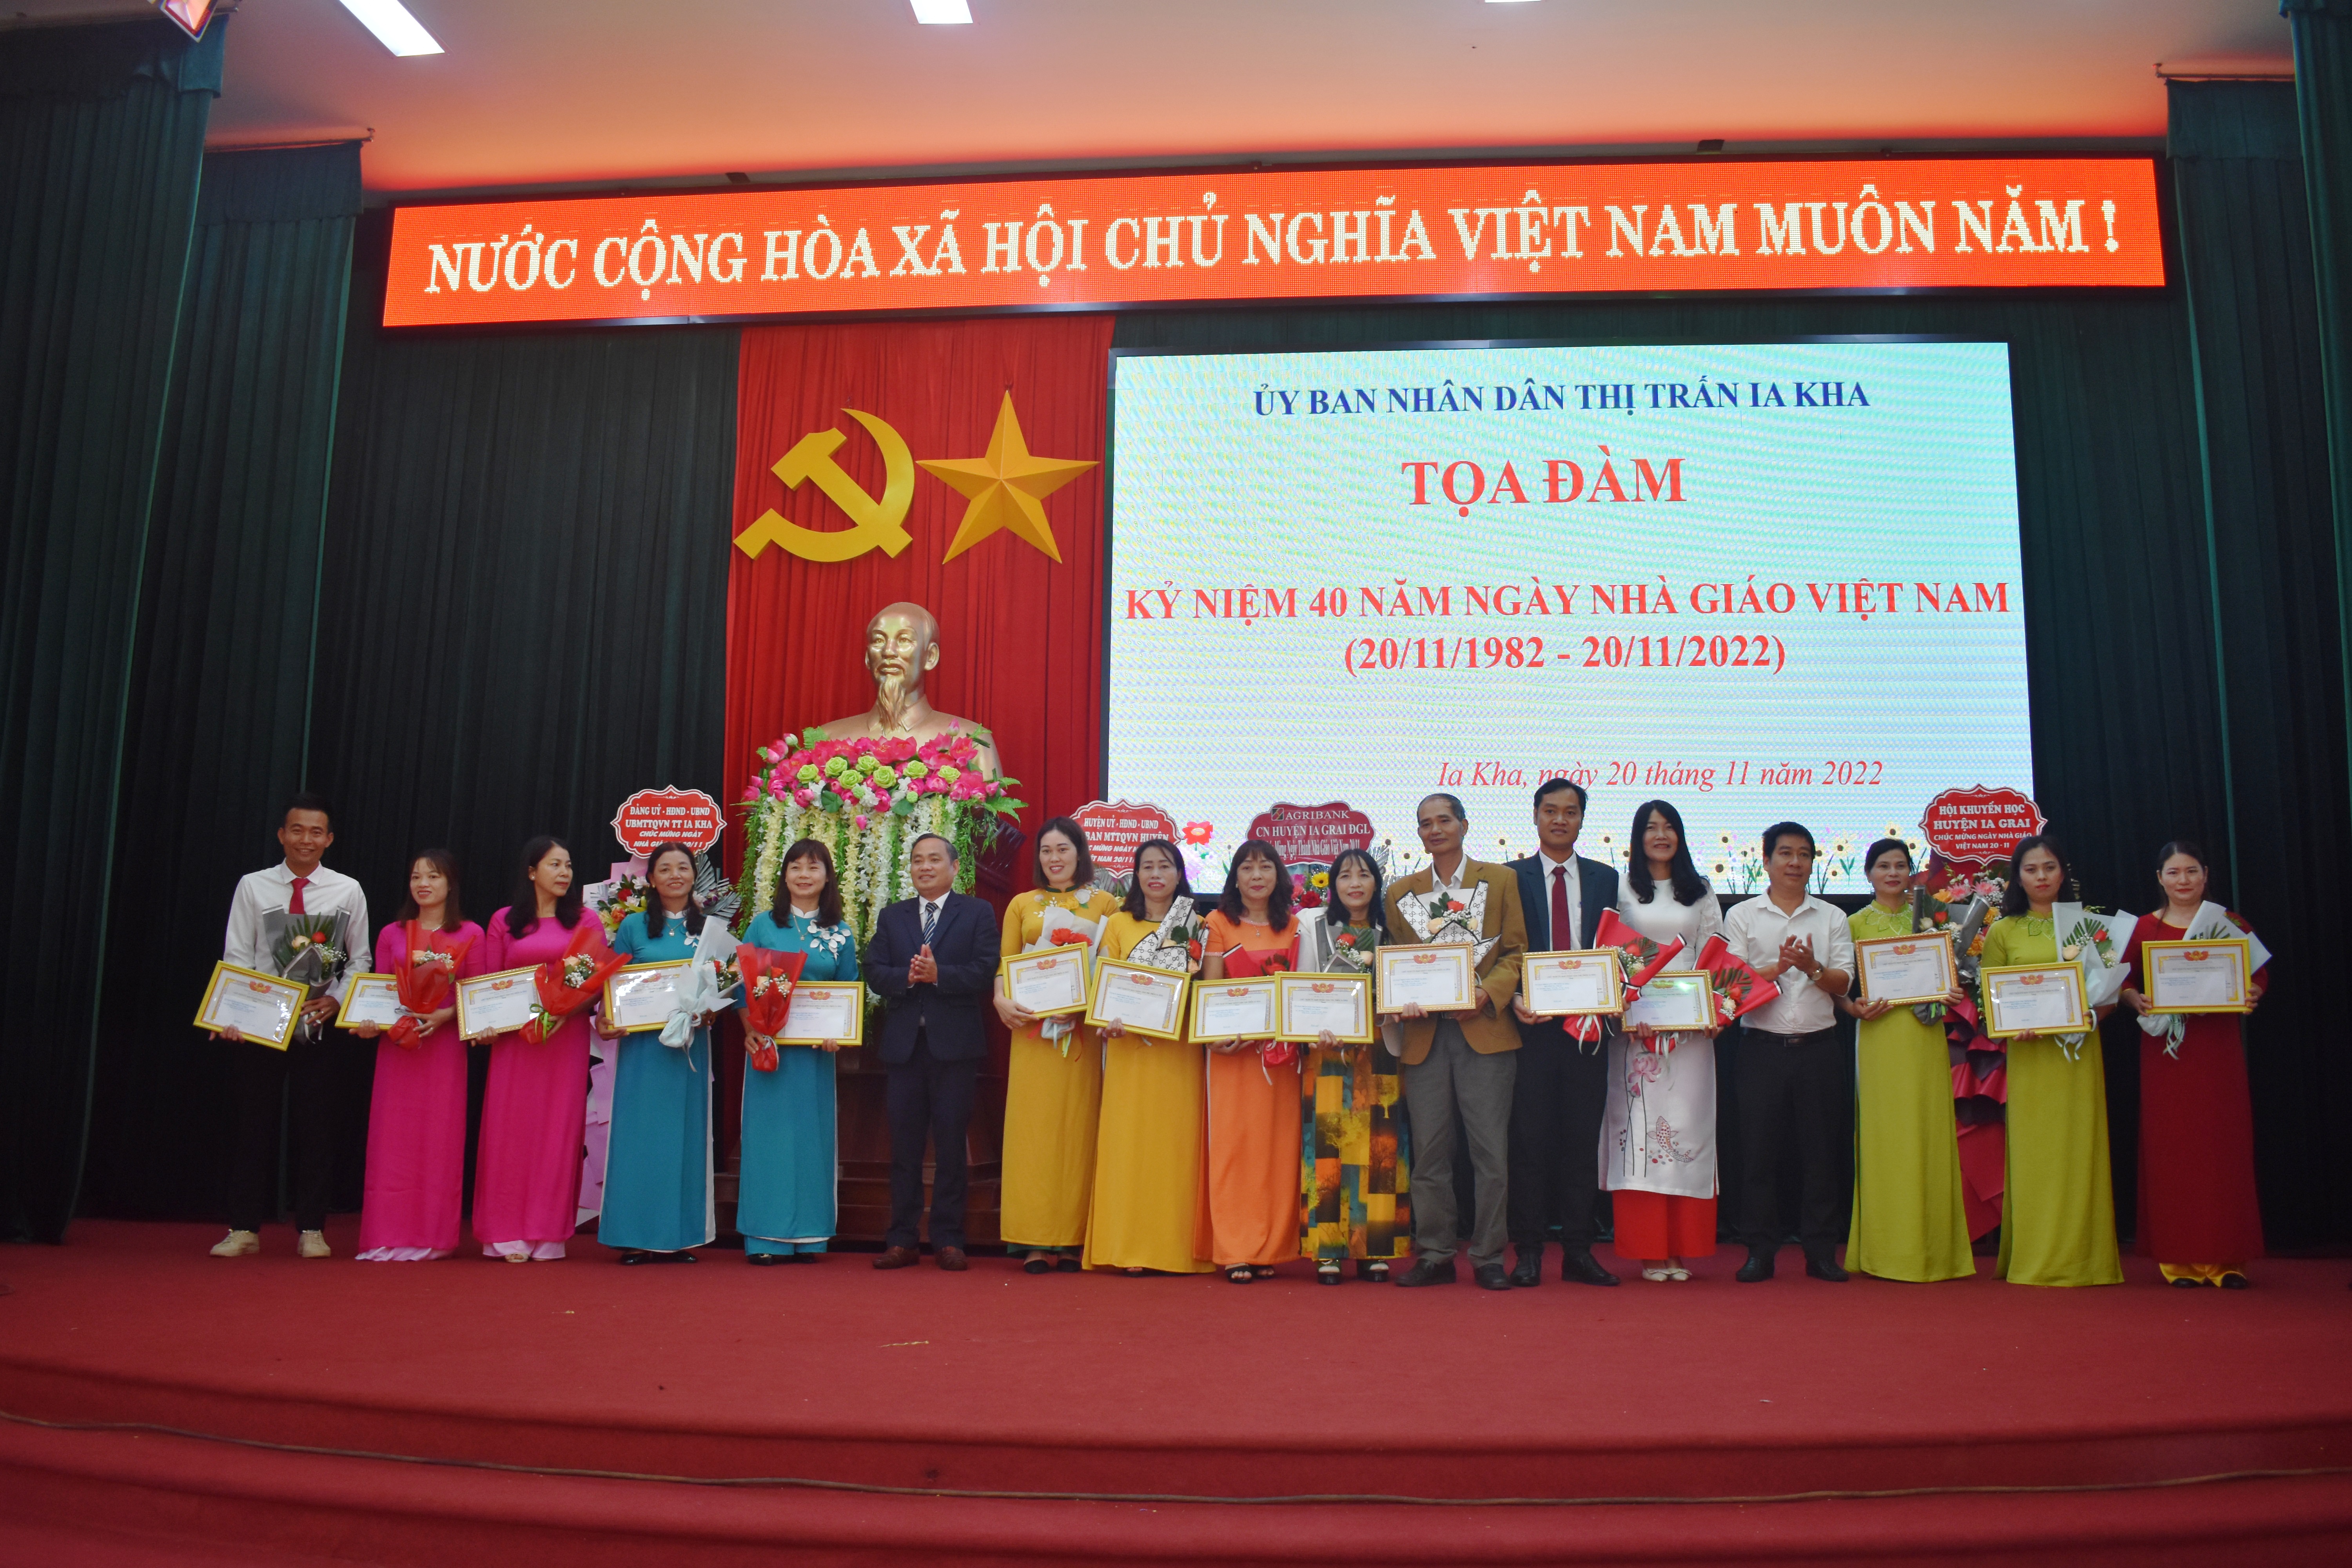 Article UBND thị trấn Ia Kha tổ chức Toạ đàm kỷ niệm 40 năm Ngày nhà giáo Việt Nam